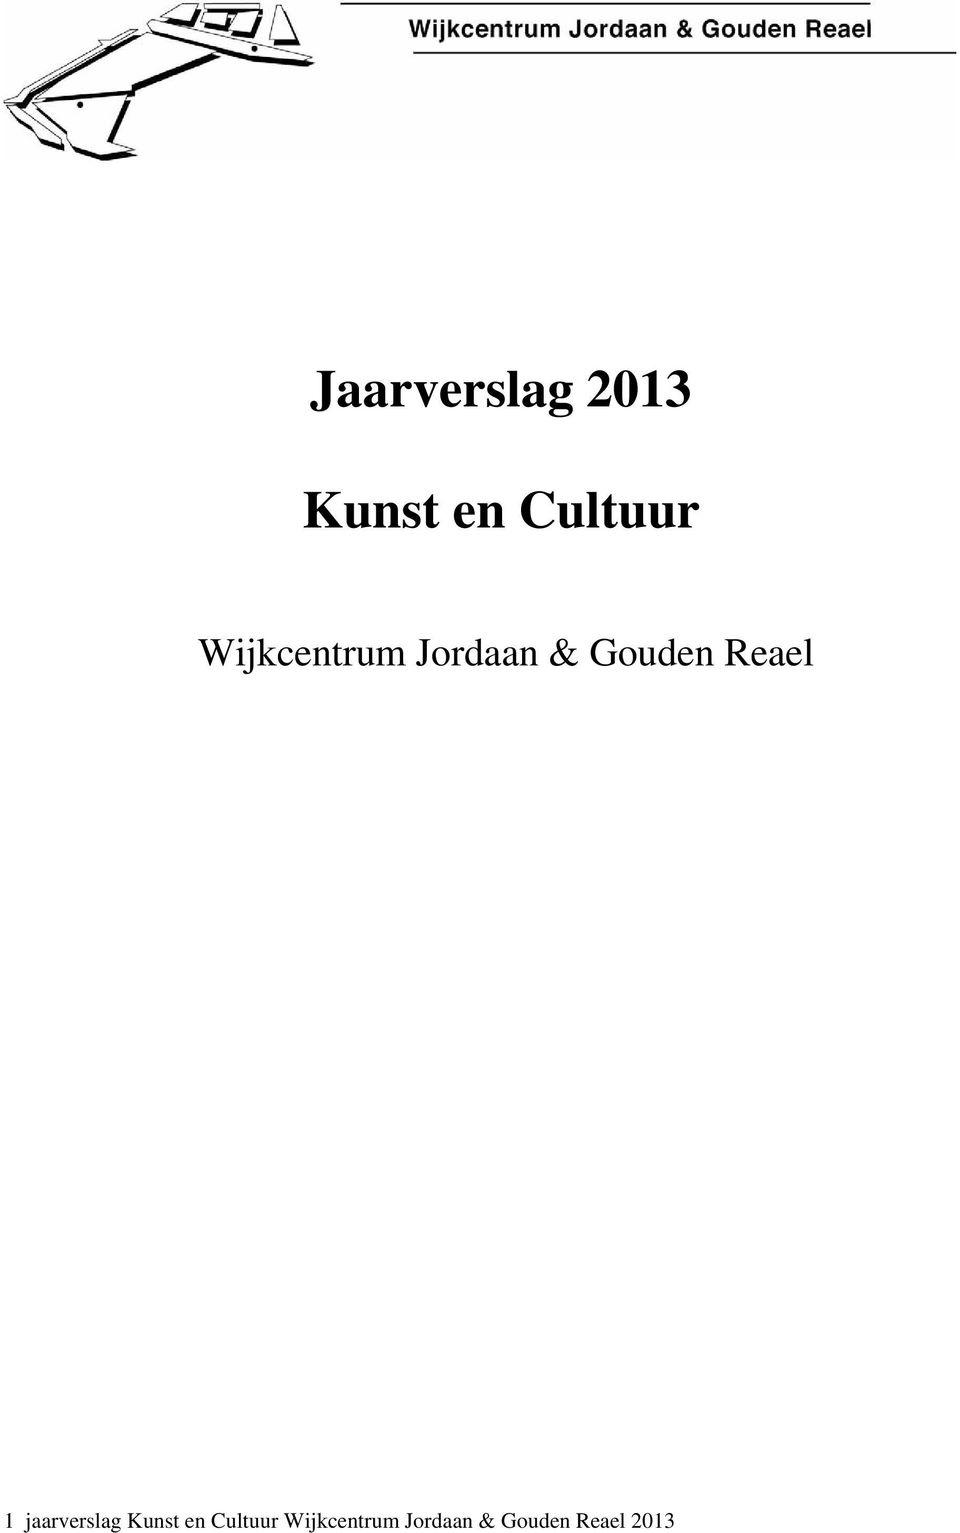 1 jaarverslag Kunst en Cultuur 